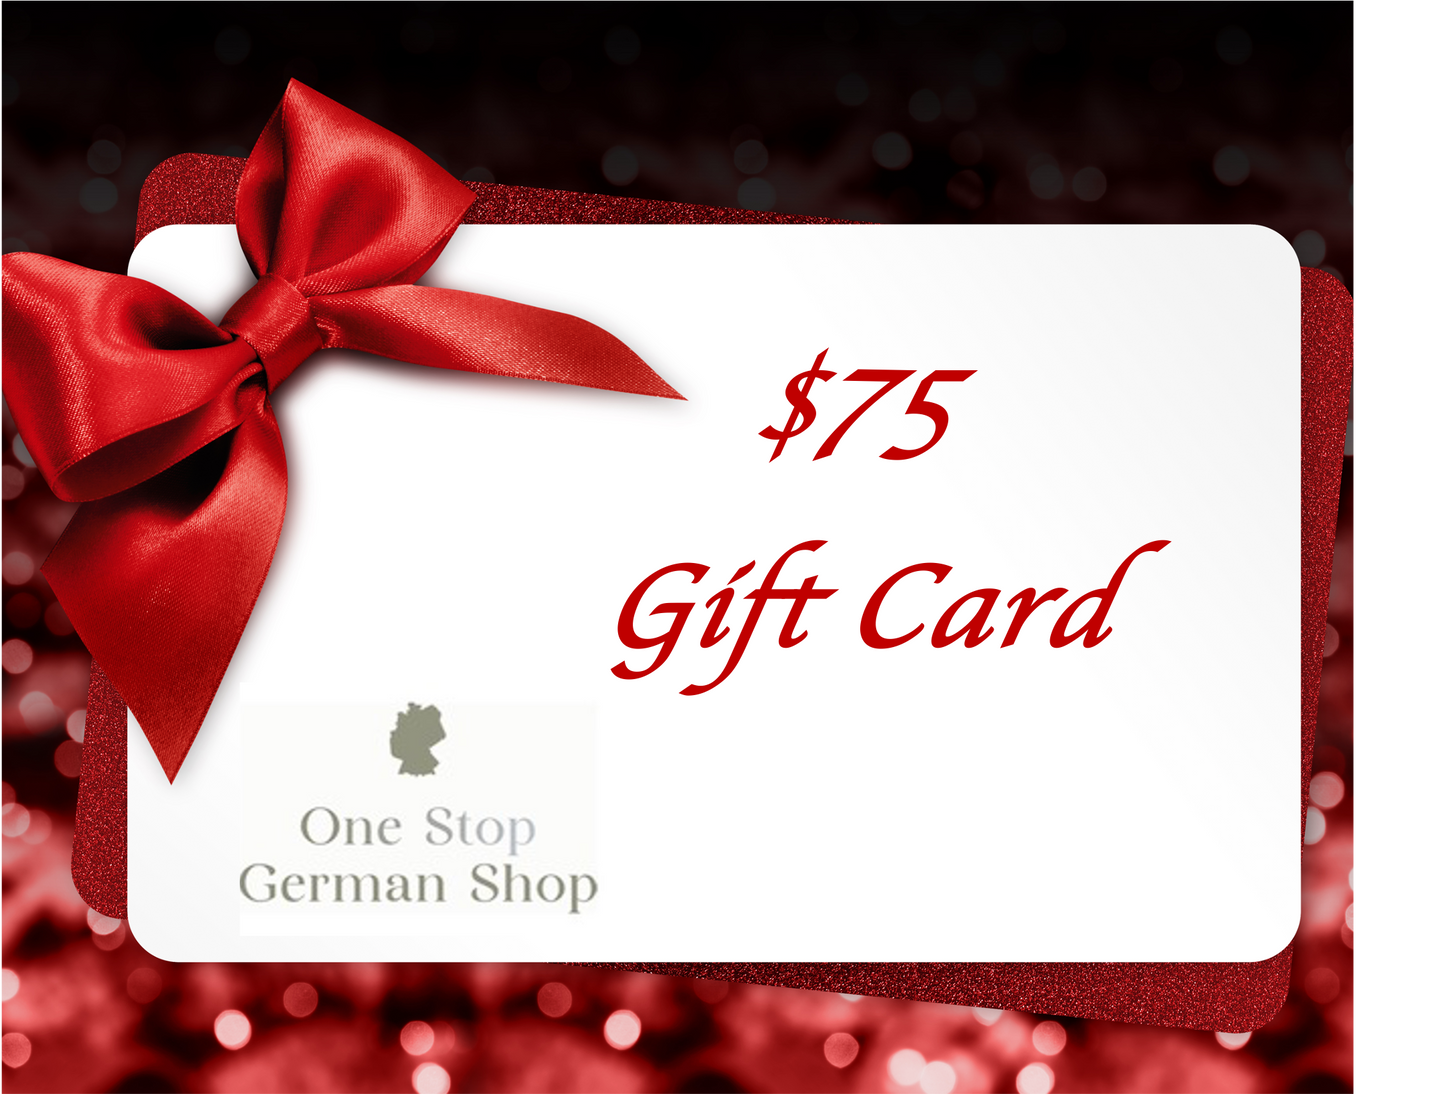 $75 Gift Card - One Stop German Shop (digital)